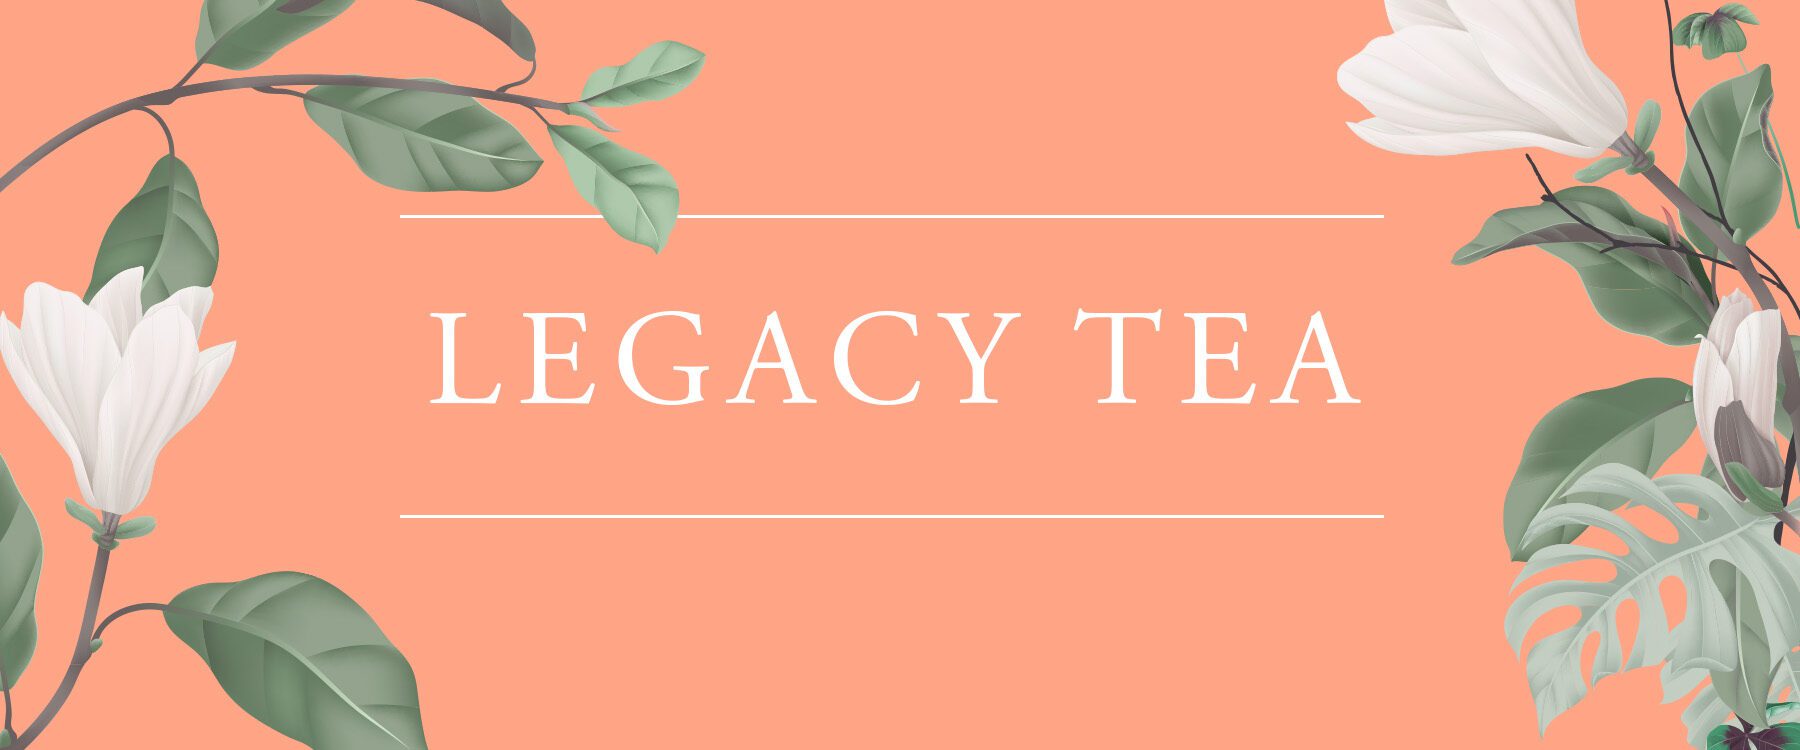 Legacy Tea